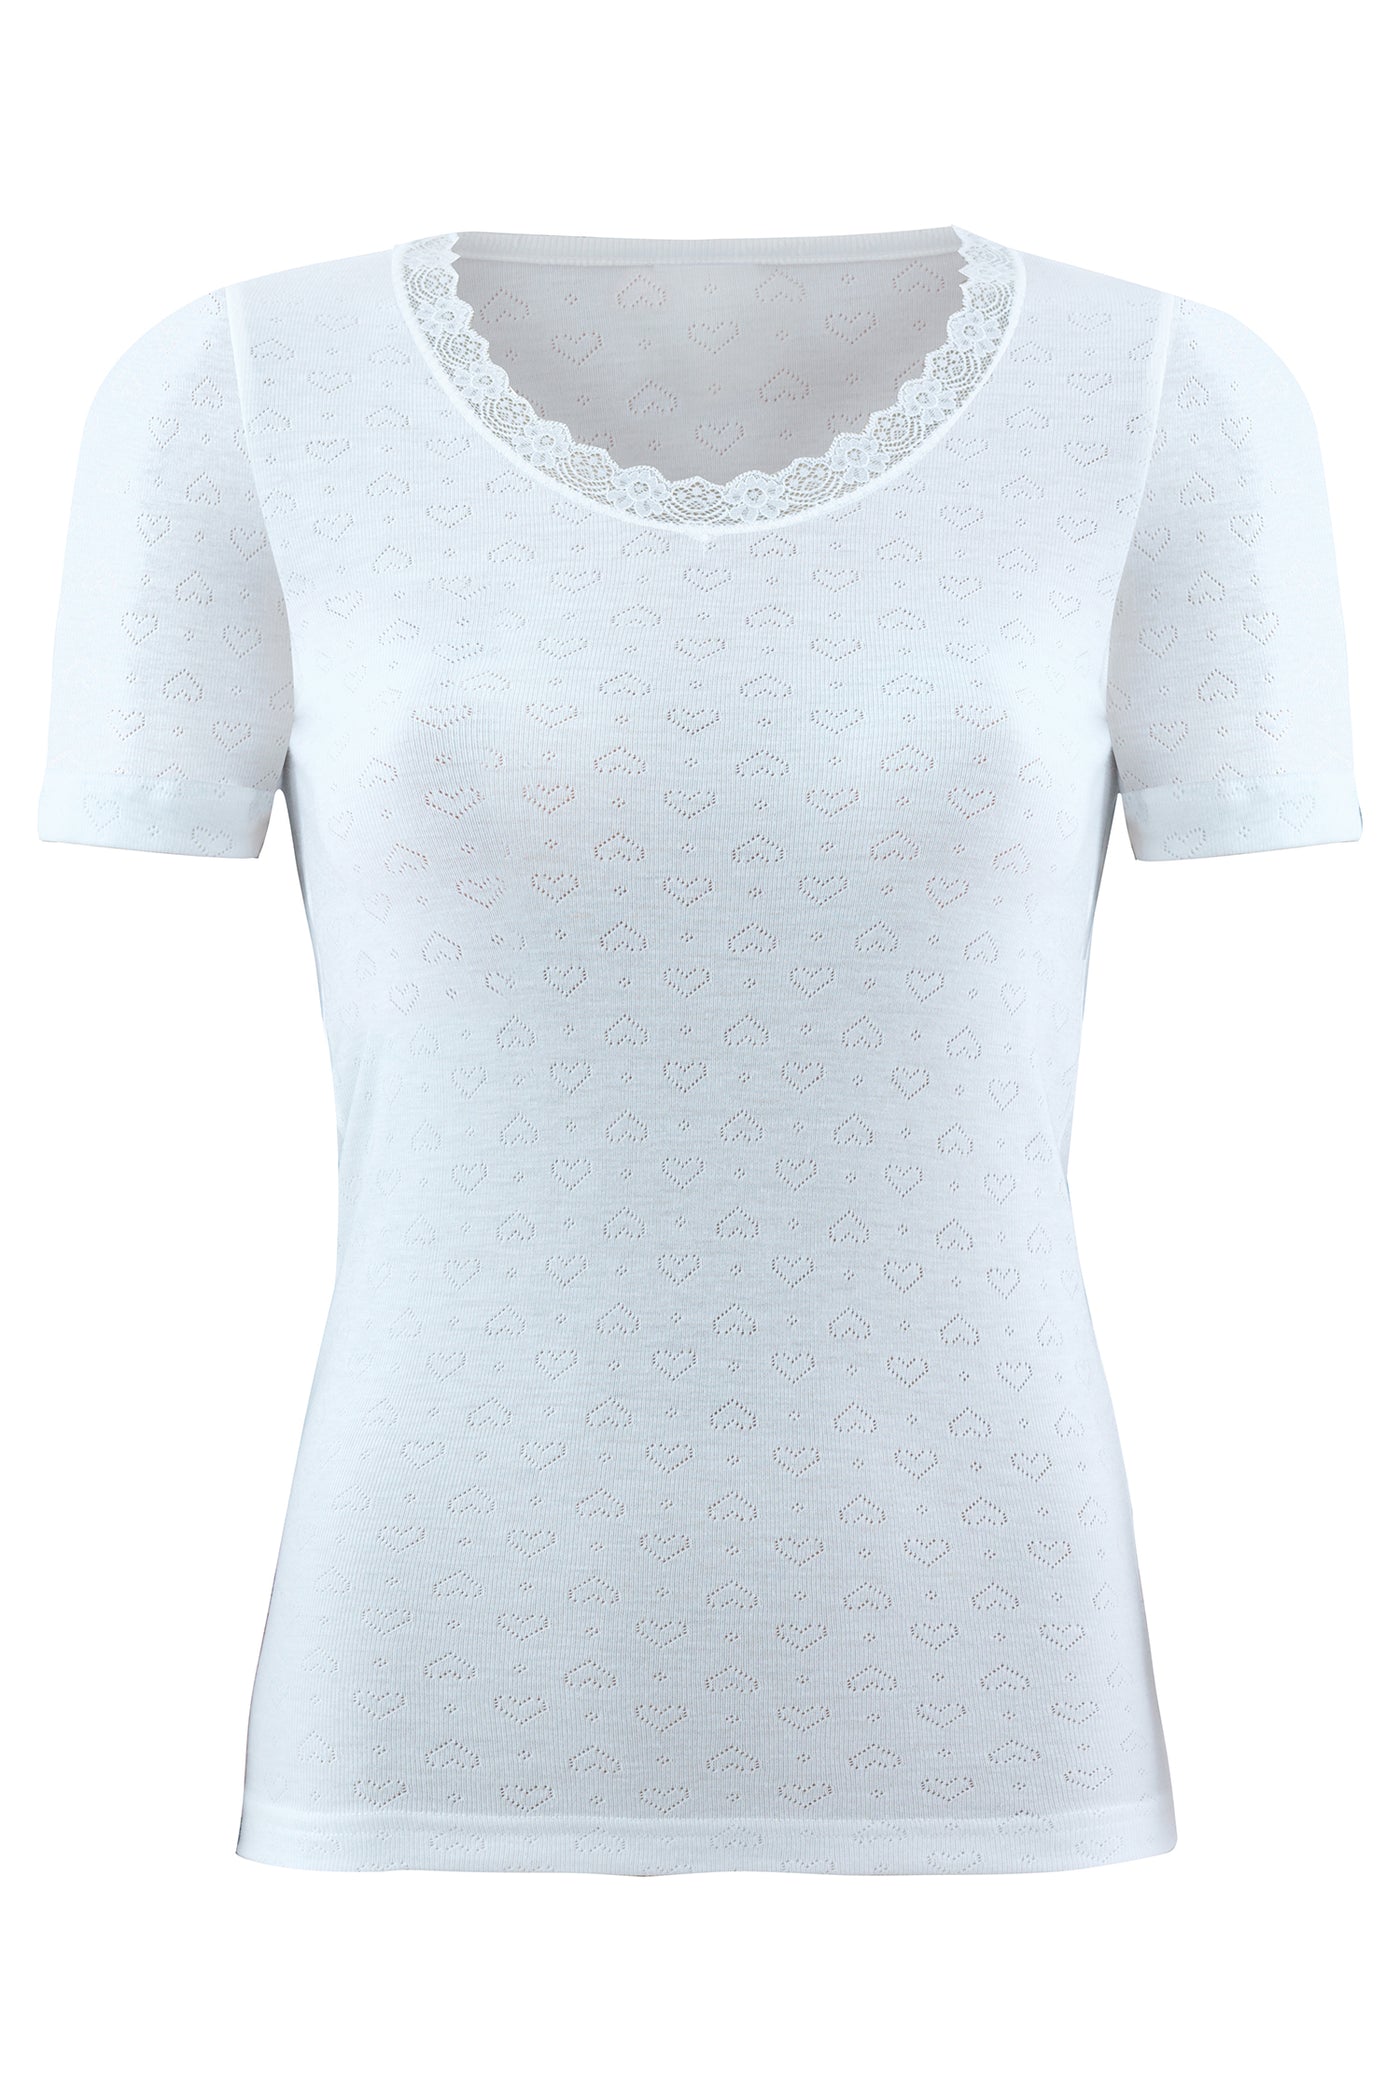 blackspade-Ladies' thermal jacquard t-shirt-1267, level-1-underwear-white